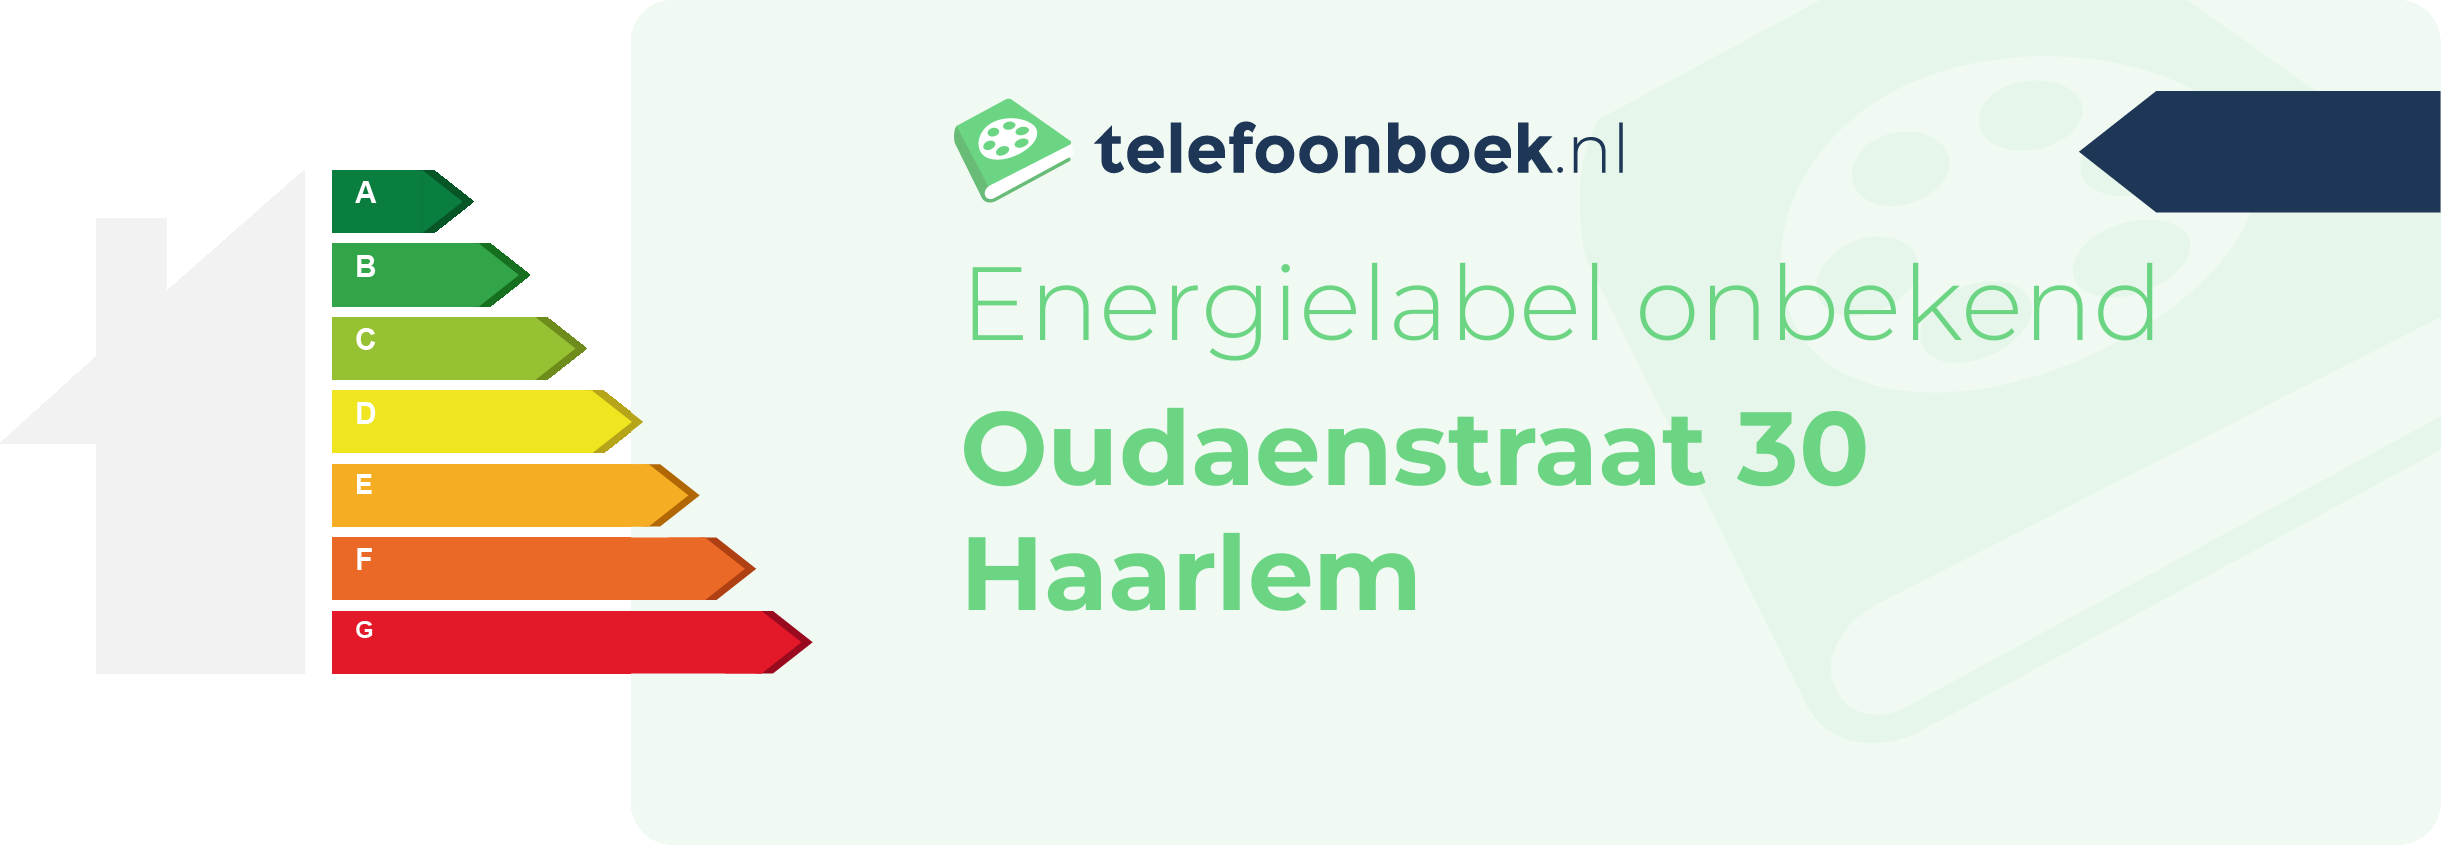 Energielabel Oudaenstraat 30 Haarlem